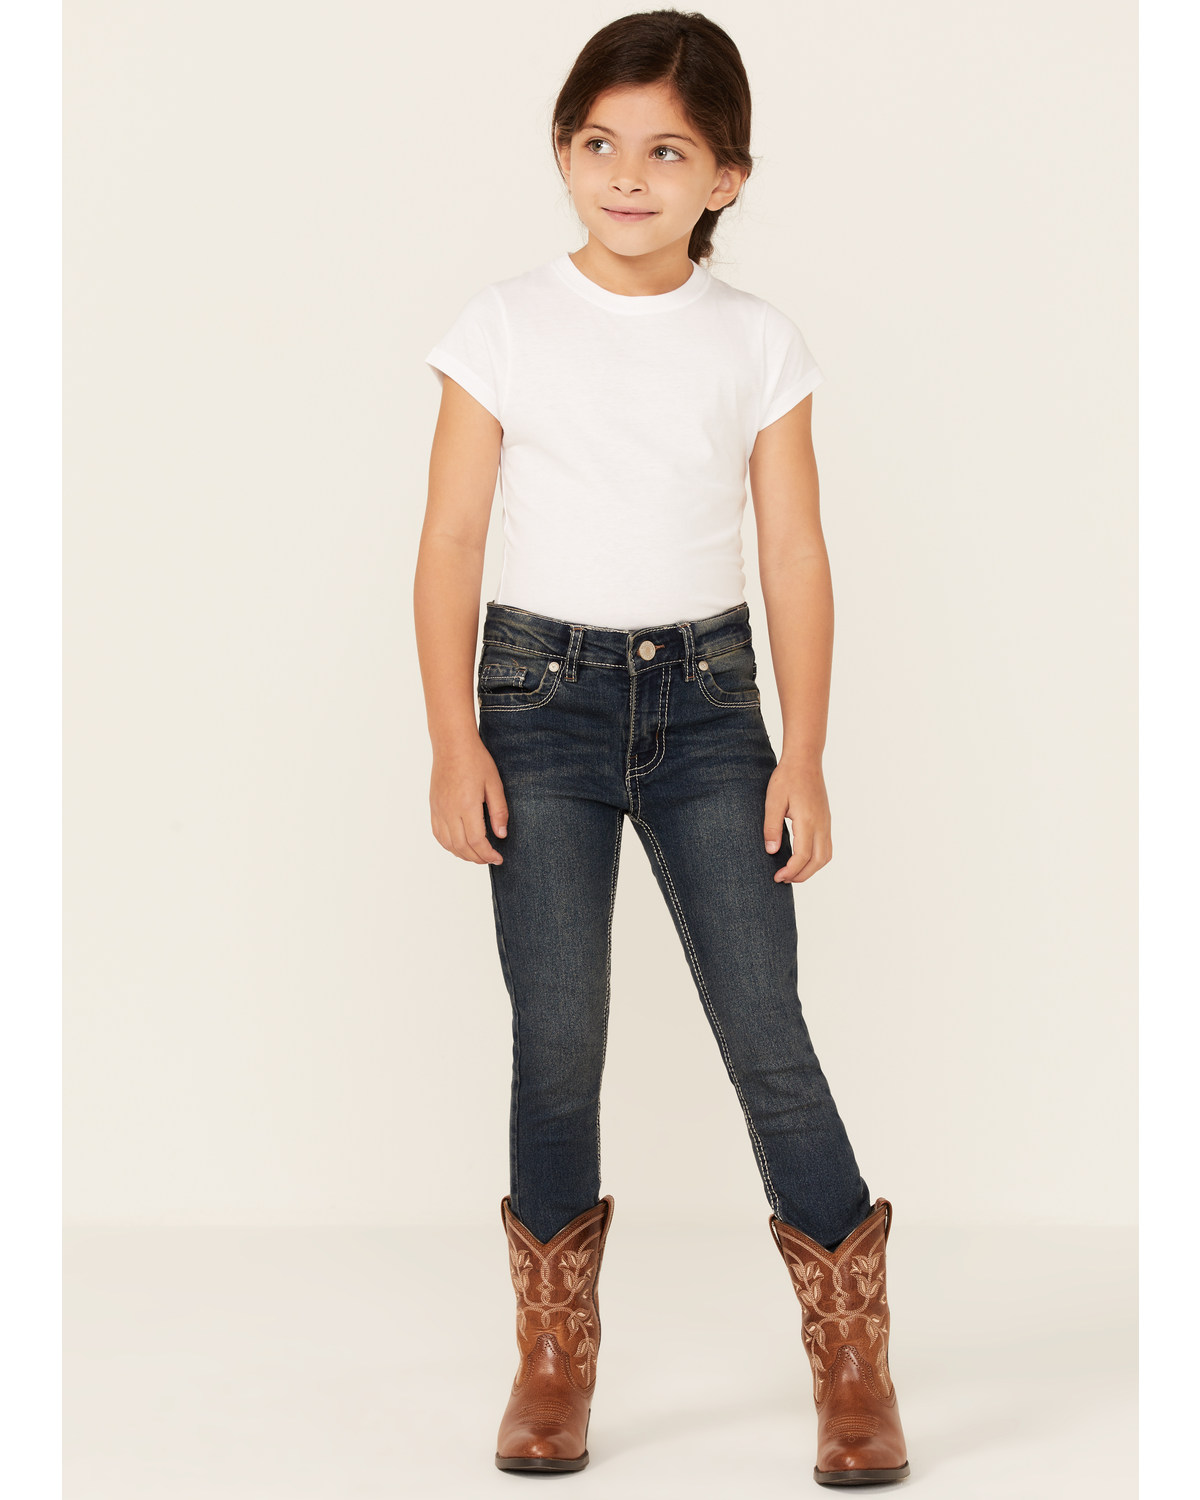 Silver Little Girls' Tammy Dark Wash Bootcut Jeans